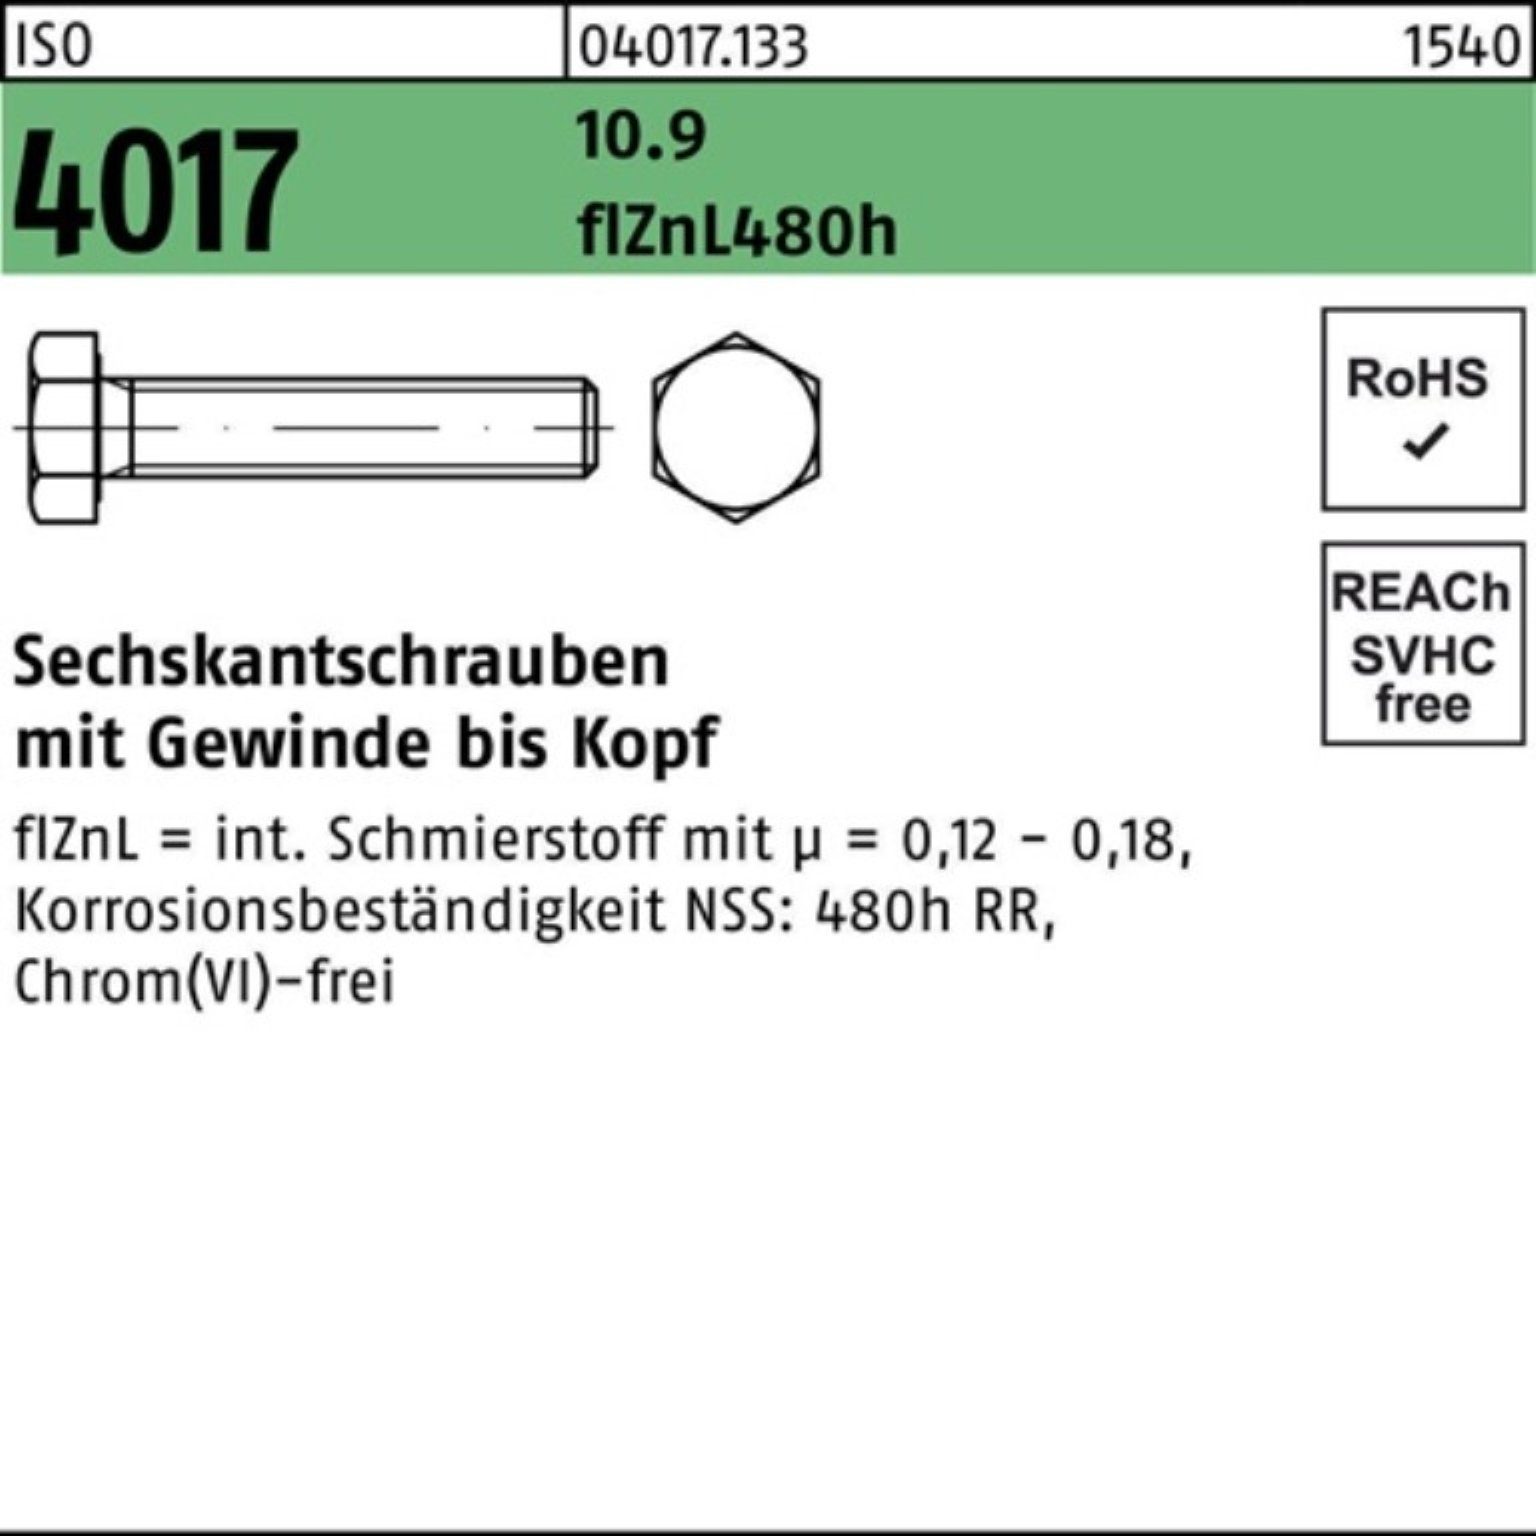 Bufab Sechskantschraube 200er Pack Sechskantschraube 20 45 zinklamellenb. 10.9 M6x ISO VG 4017